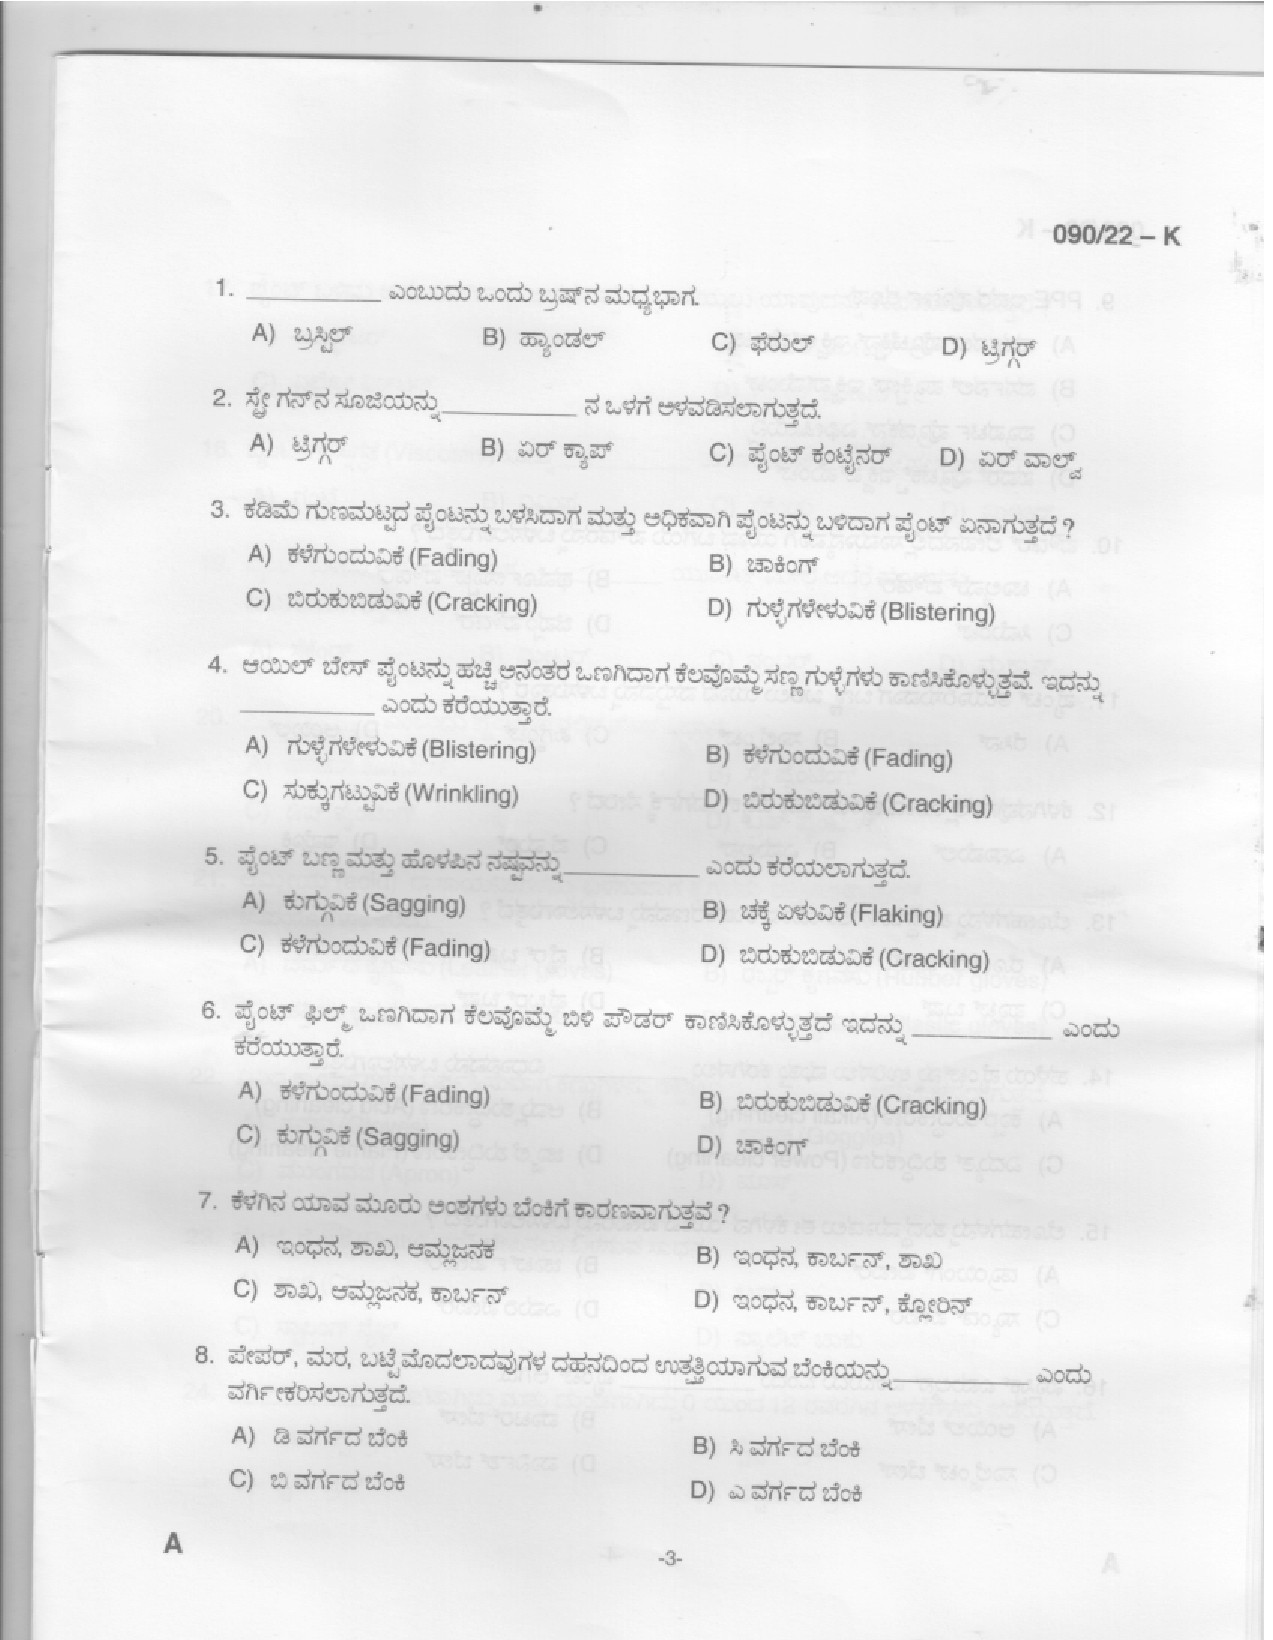 KPSC Painter Kannada Exam 2022 Code 902022 K 1